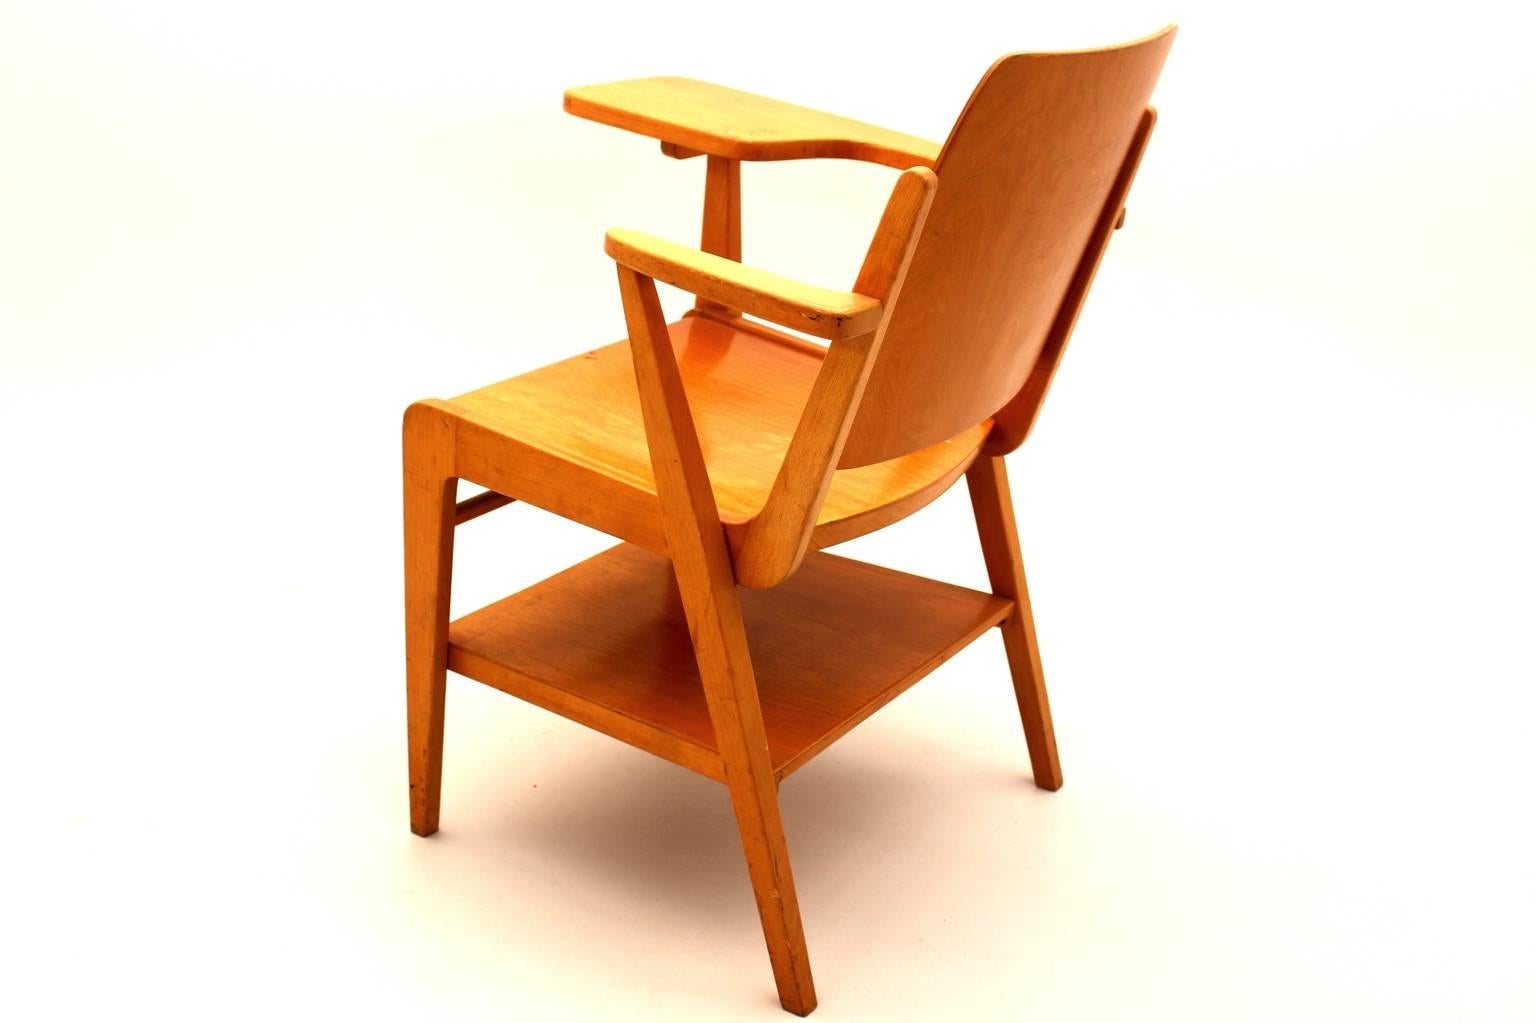 Mid Century Modern brauner Vintage Stuhl mit integriertem Schreibtisch aus Buche von Franz Schuster für Wiesner - Hager 1959.
Während das Gestell des Stuhls aus massivem Buchenholz bestand, wurden Sitz und Rückenlehne aus Sperrholz gefertigt.
Das